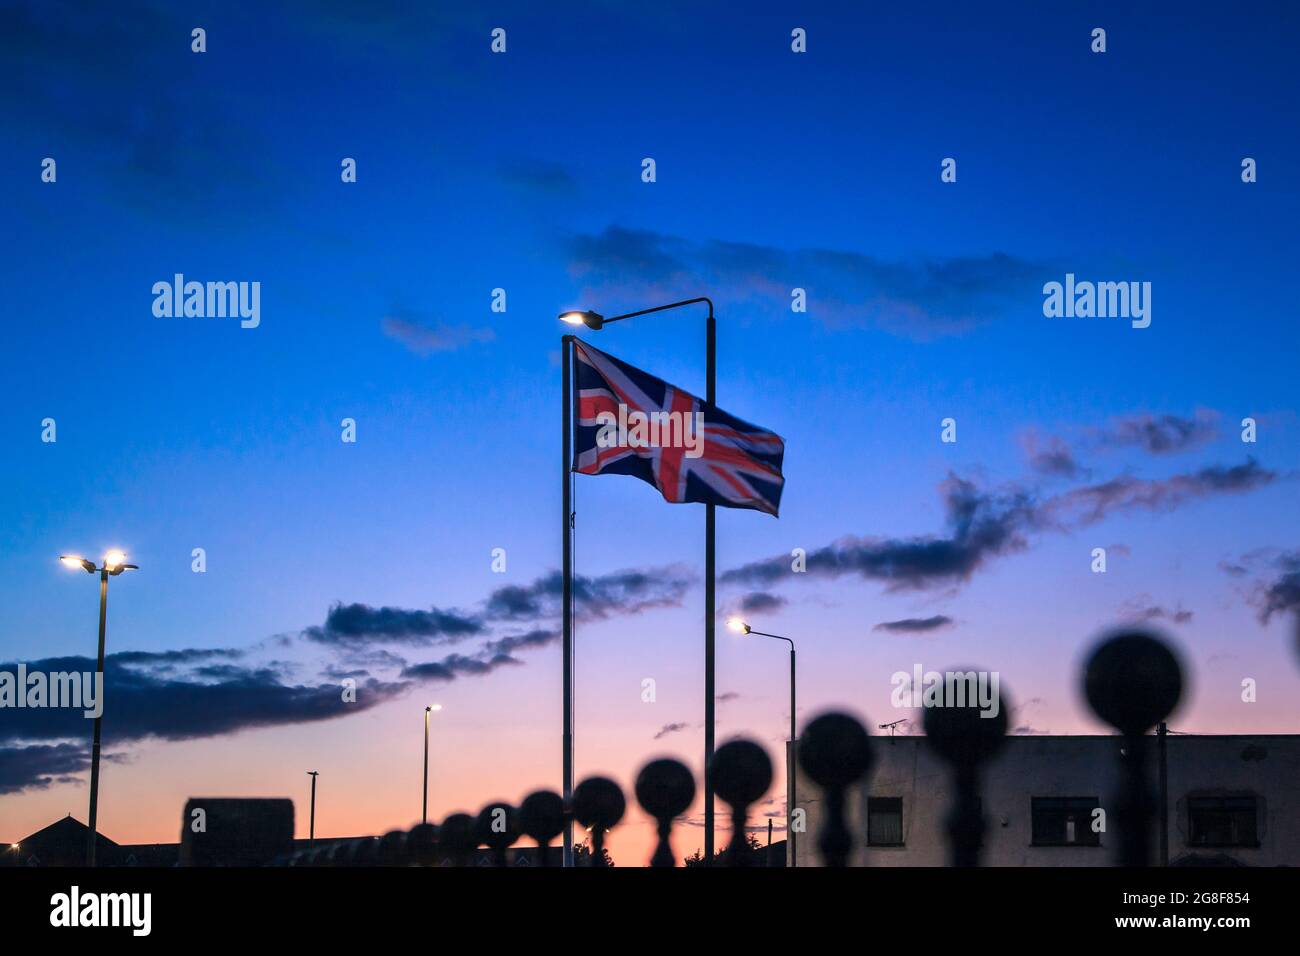 Drapeau britannique qui agite au coucher du soleil dans la ville de long Eaton, à Notinghamshire, Angleterre, Royaume-Uni, Europe Banque D'Images